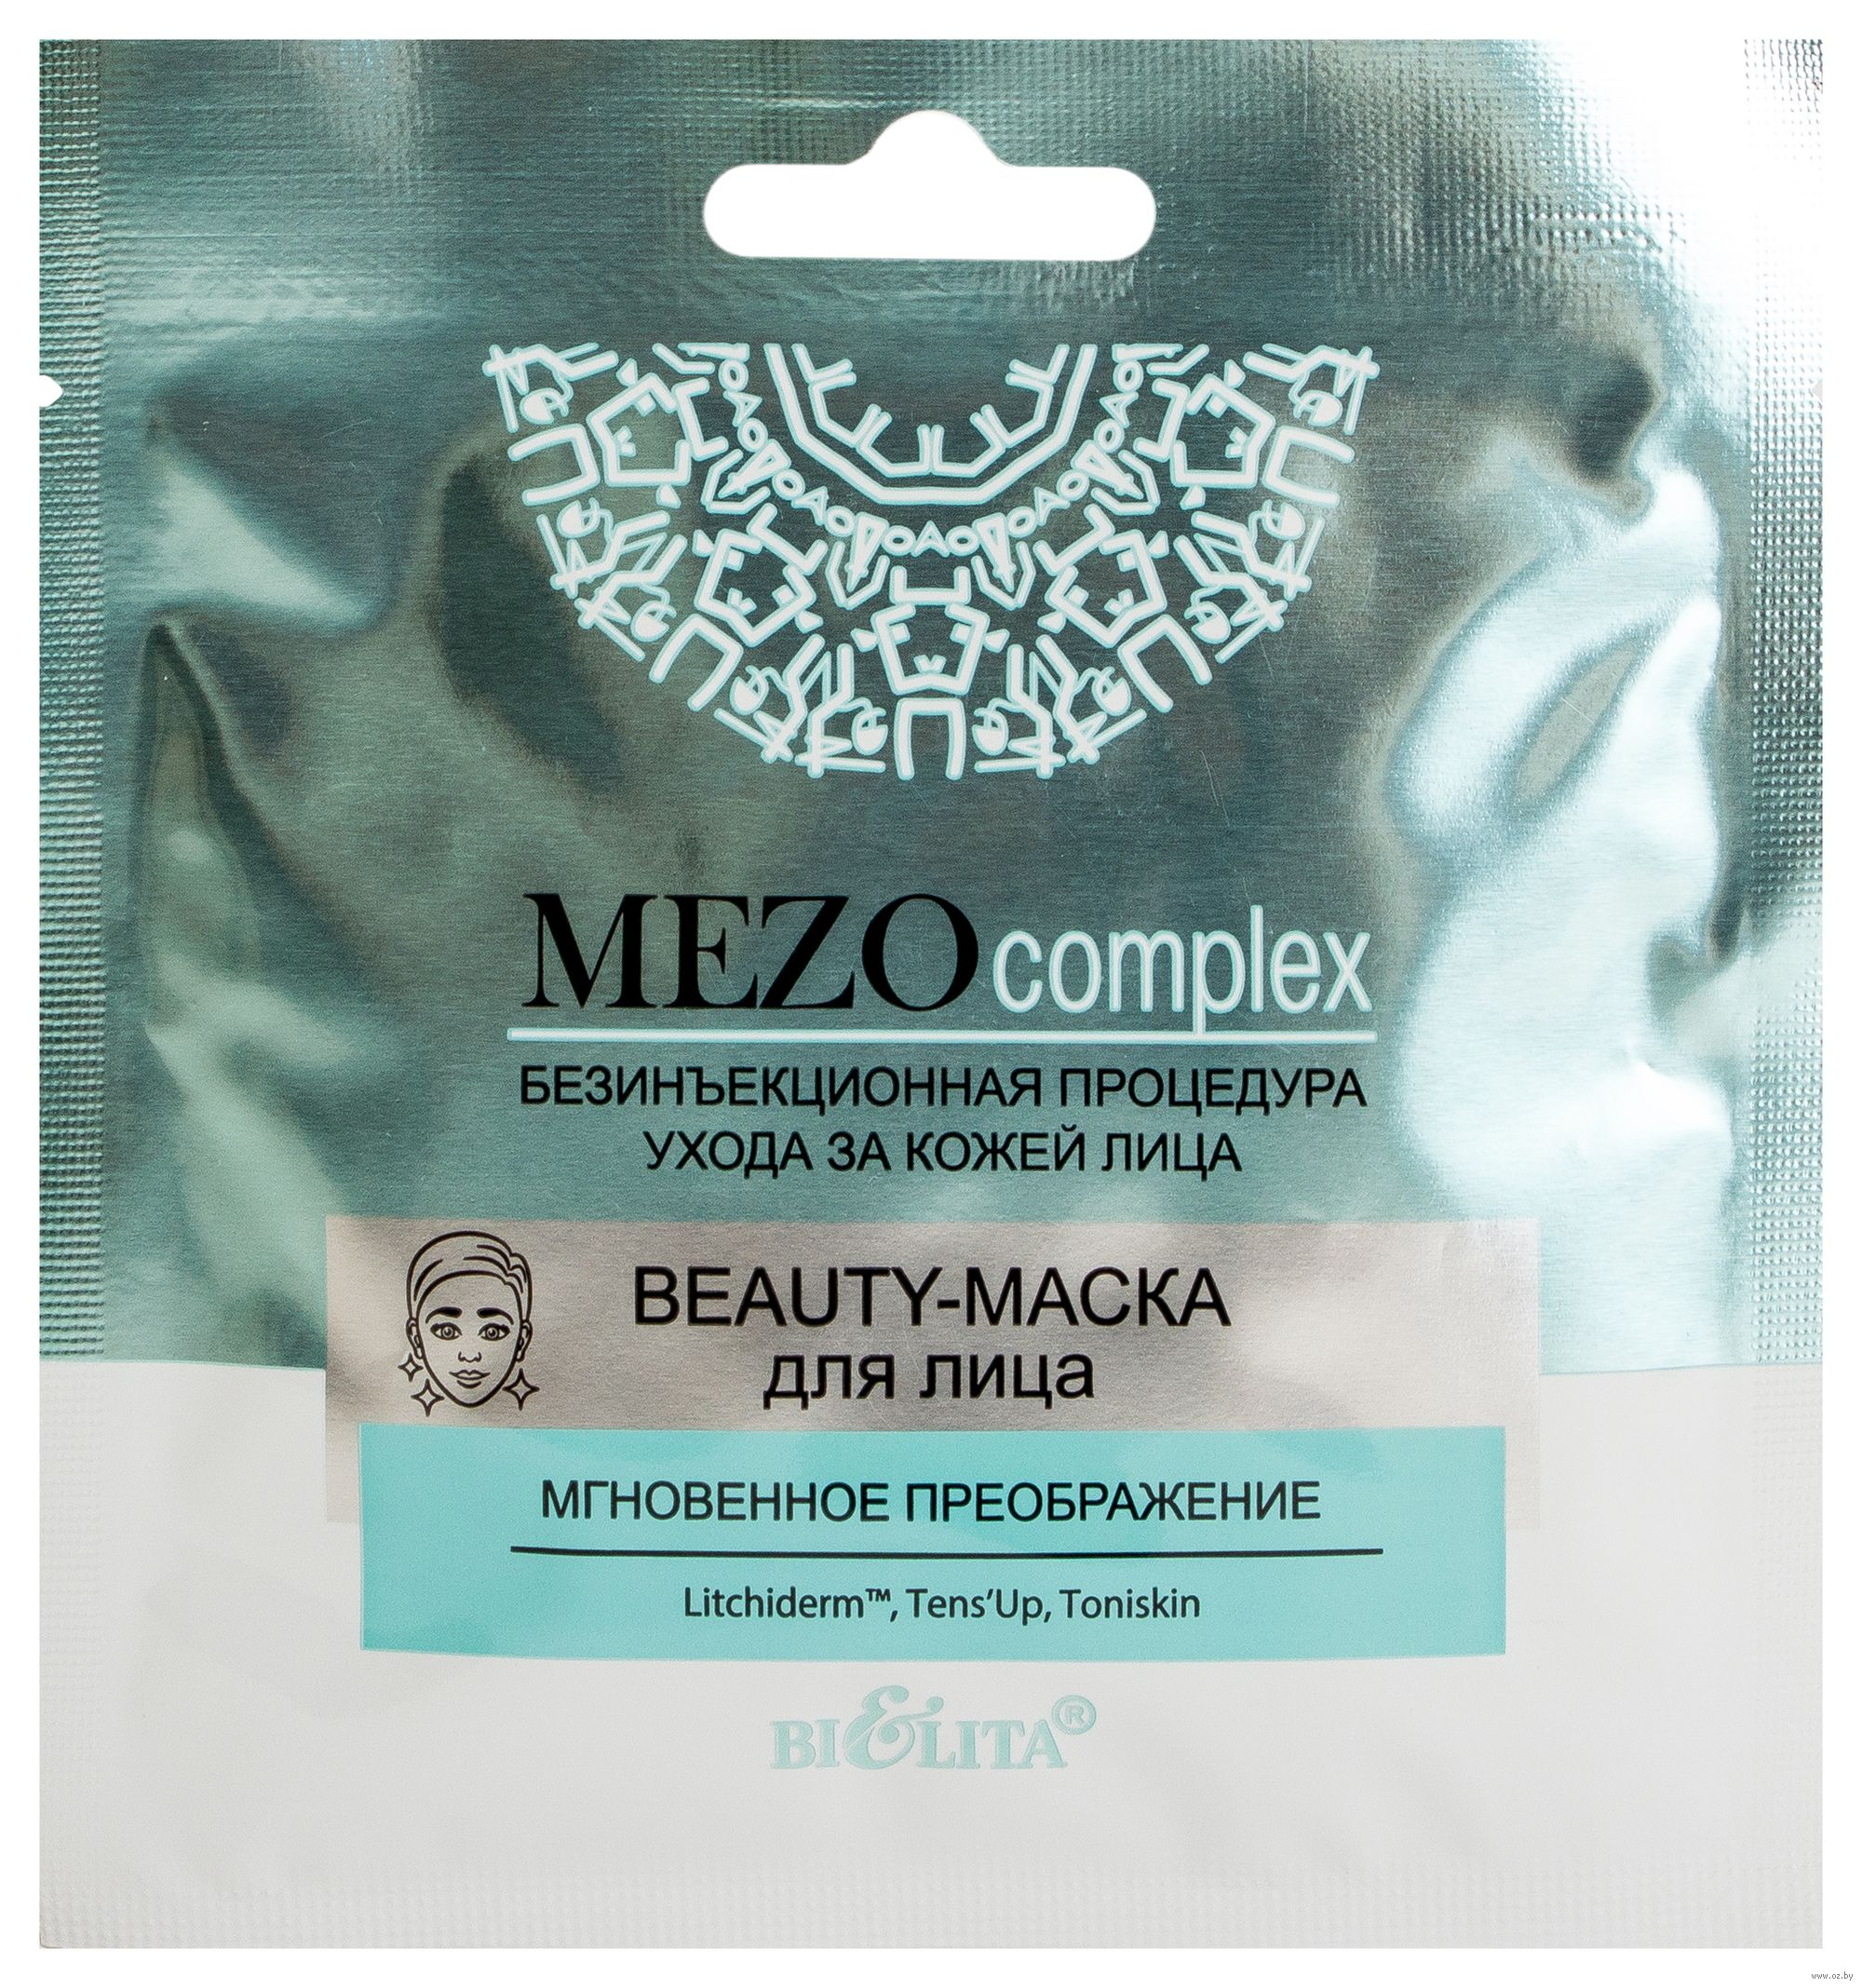 Beauty-Маска для лица MezoComplex мгновенное преображение Belita